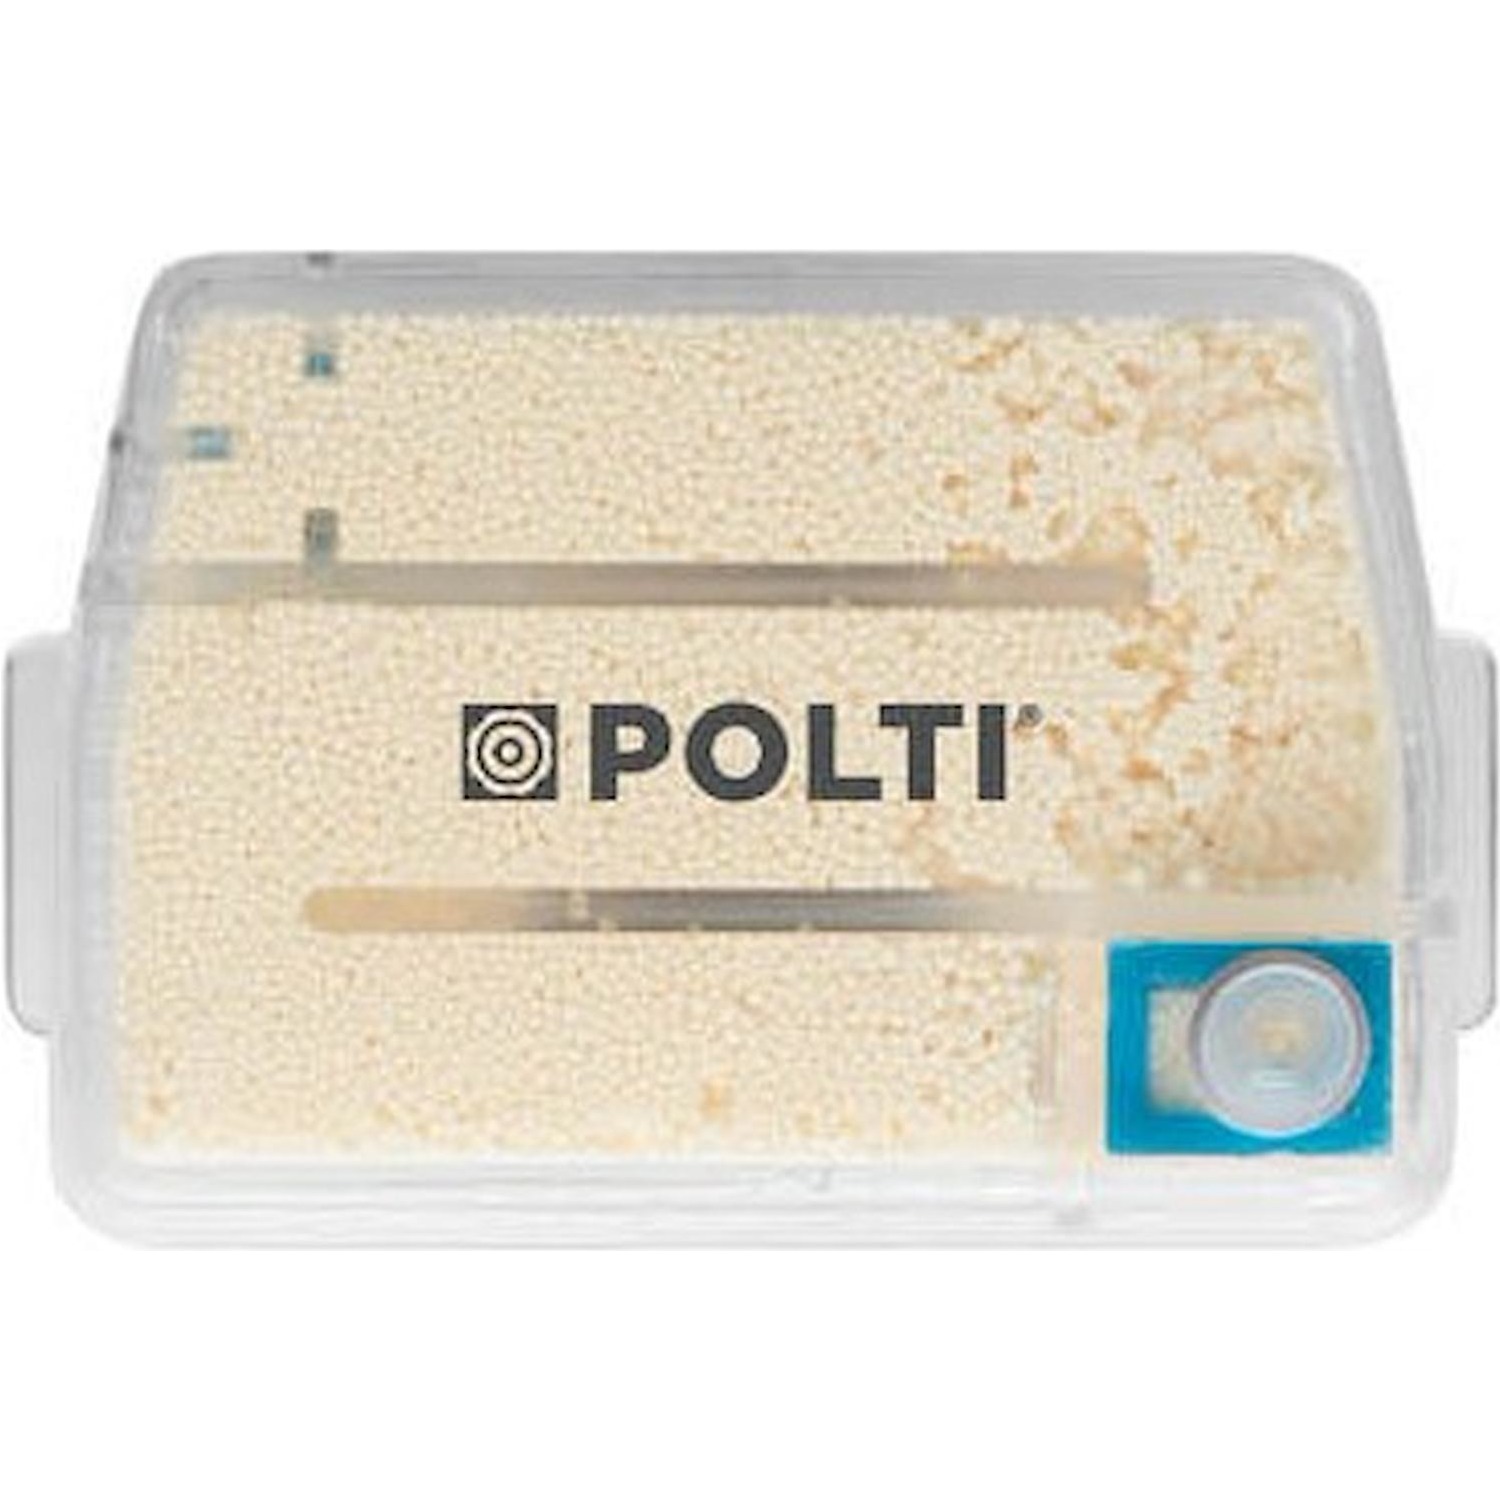 Immagine per Kit 2 filtri anticalcare Polti PAEU0398 compatibile con Polti Vaporetto Style SV660/650/620/610 da DIMOStore